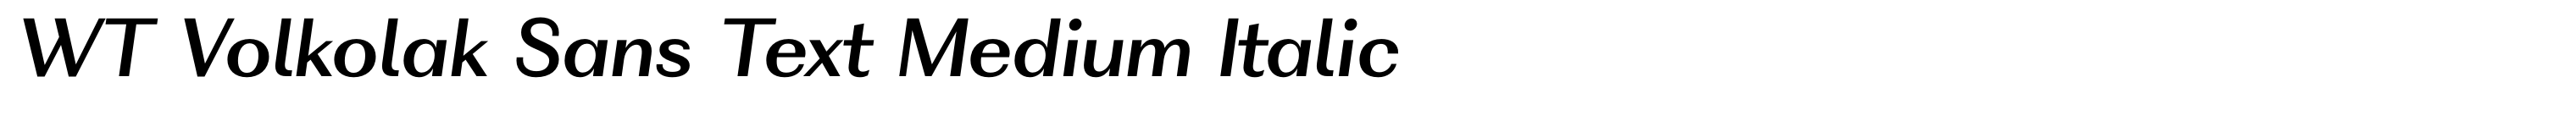 WT Volkolak Sans Text Medium Italic